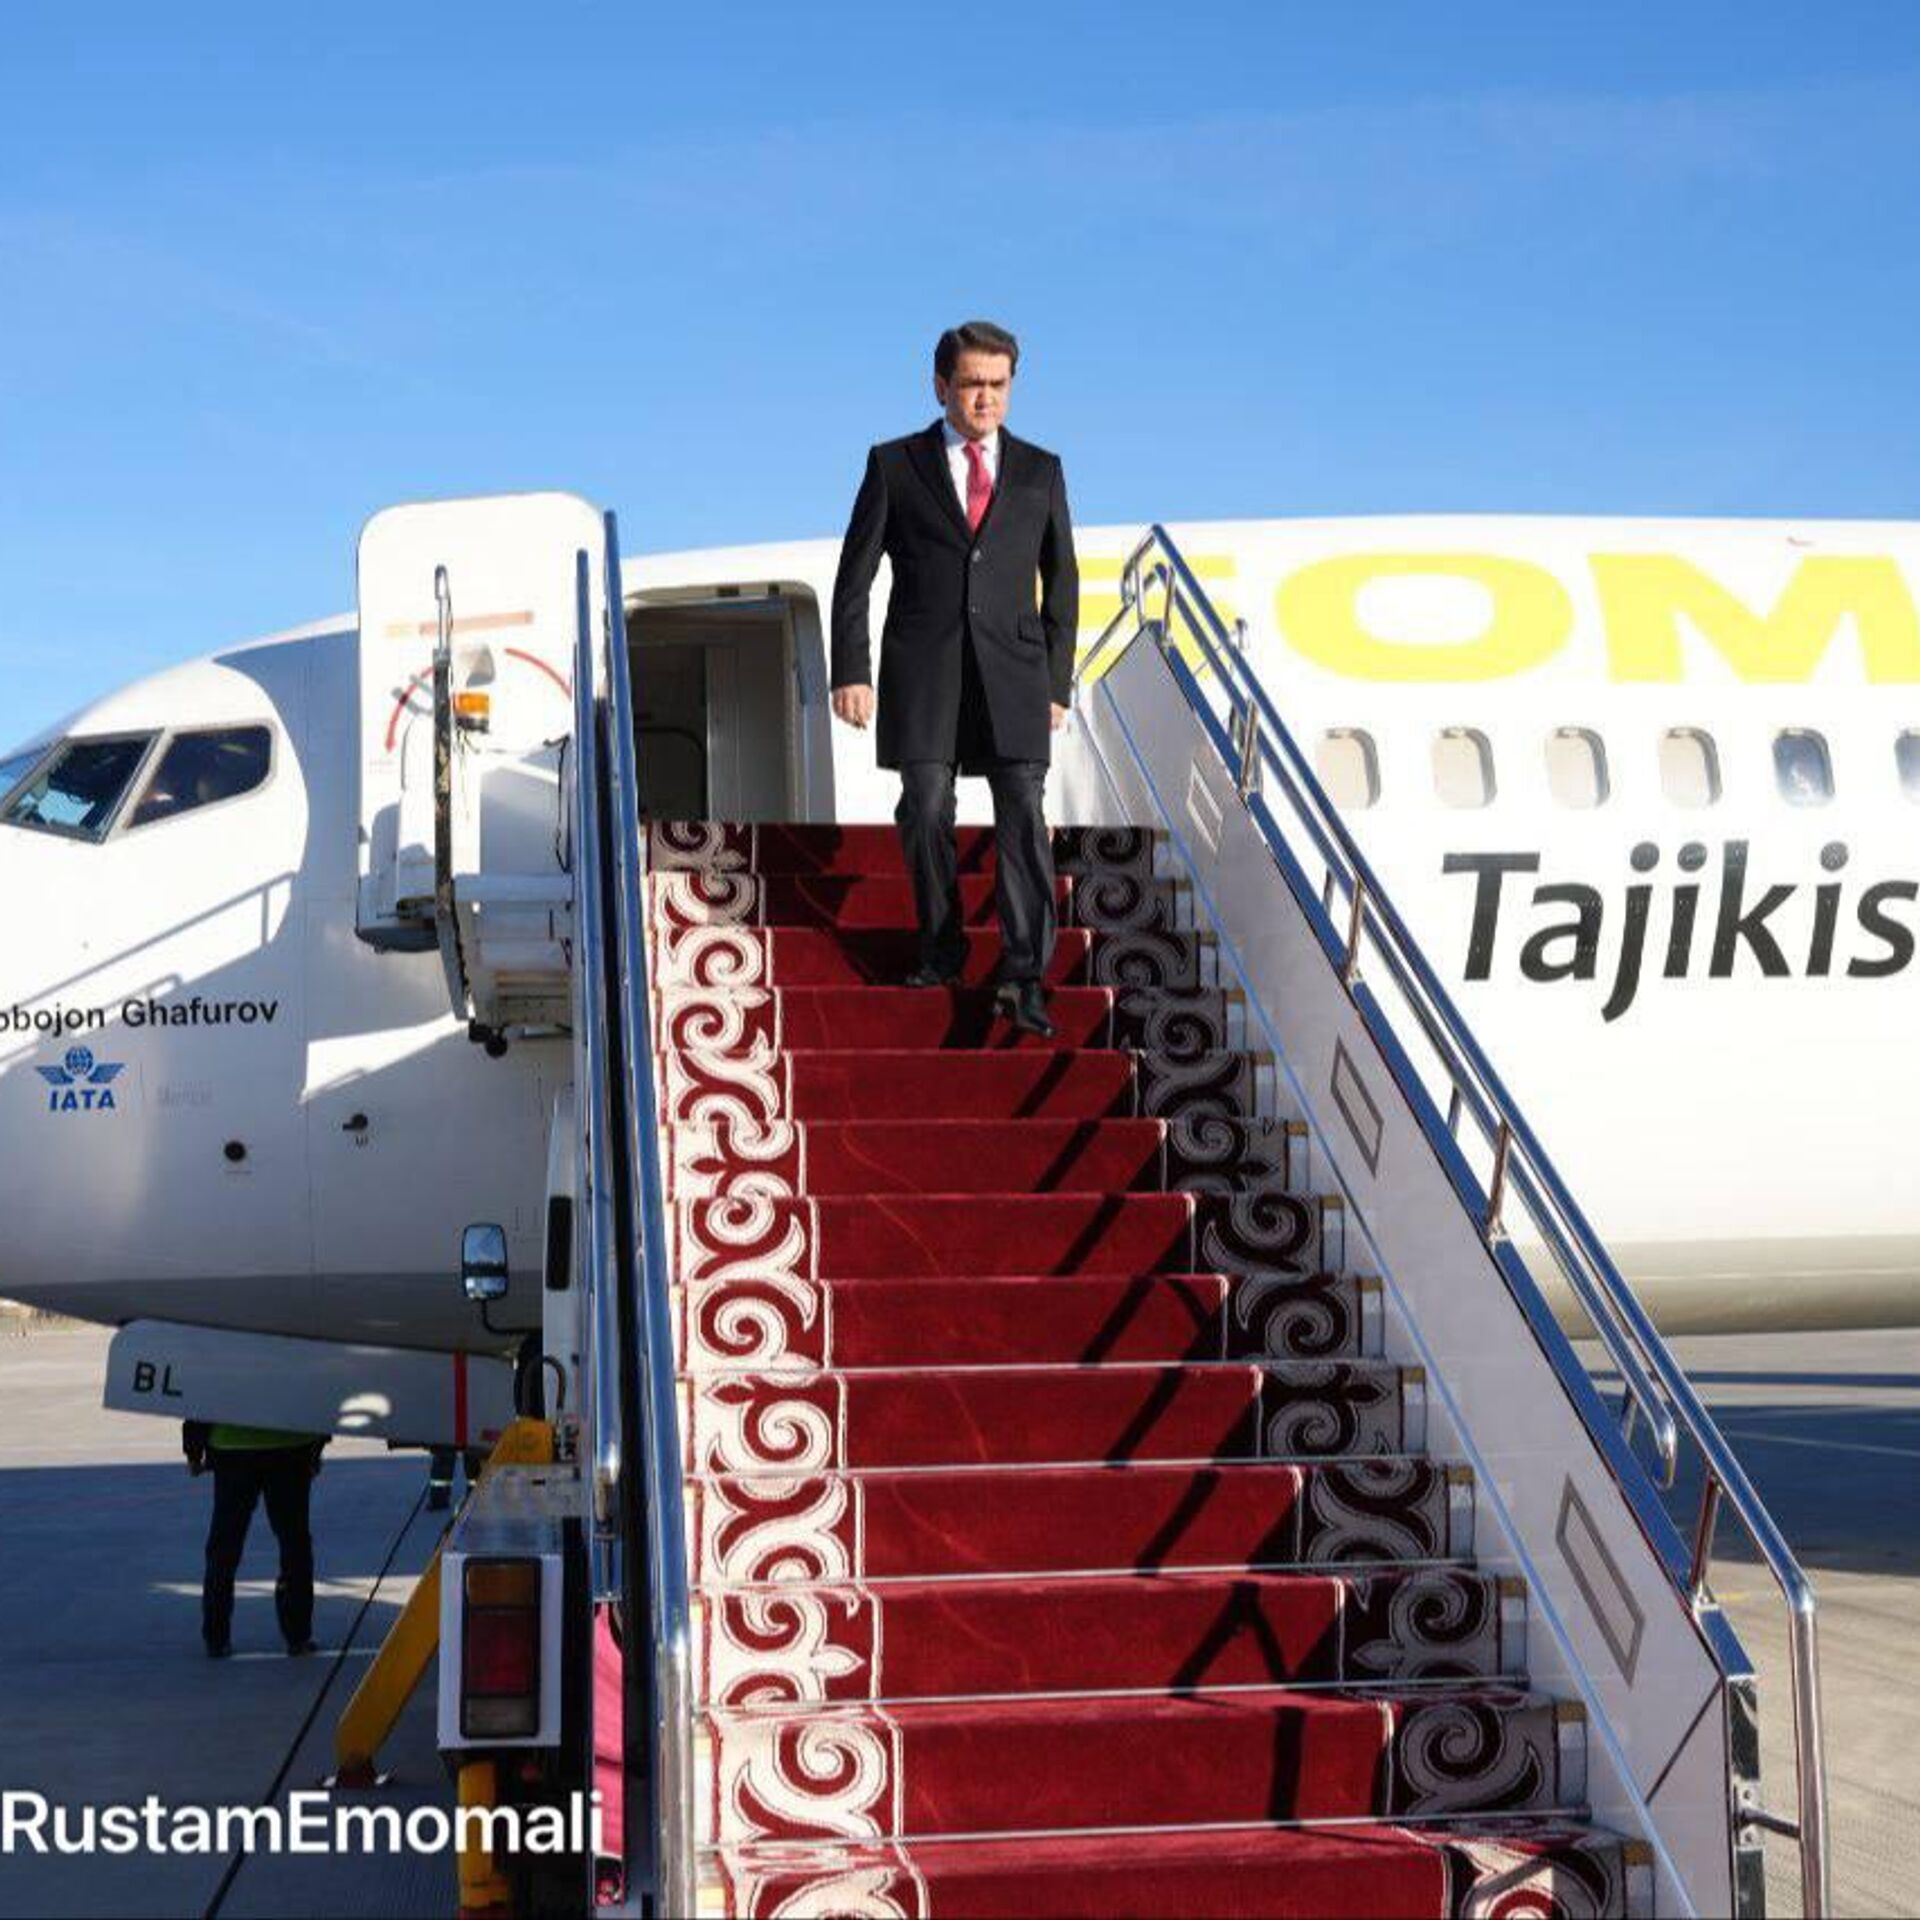 Рустам Эмомали отправился в Бишкек